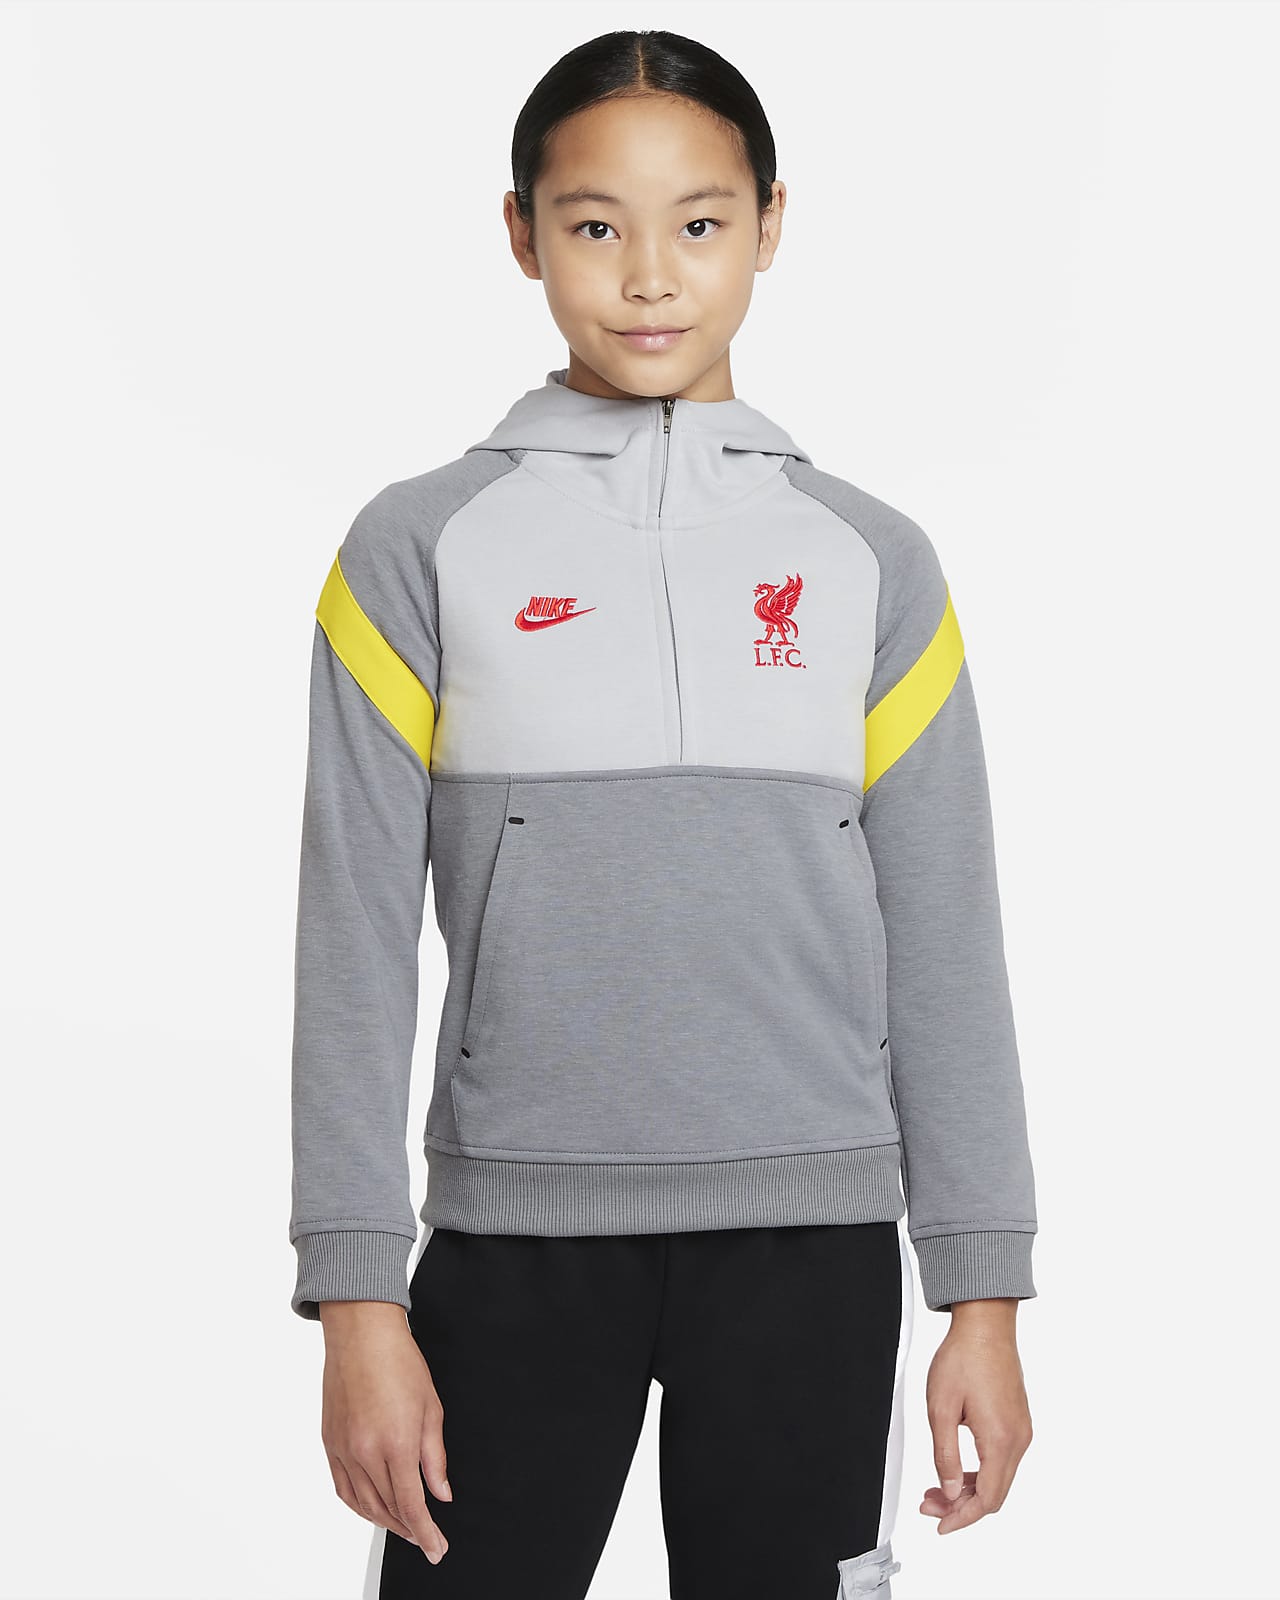 Fotbalová mikina s kapucí a polovičním zipem Liverpool FC pro větší děti.